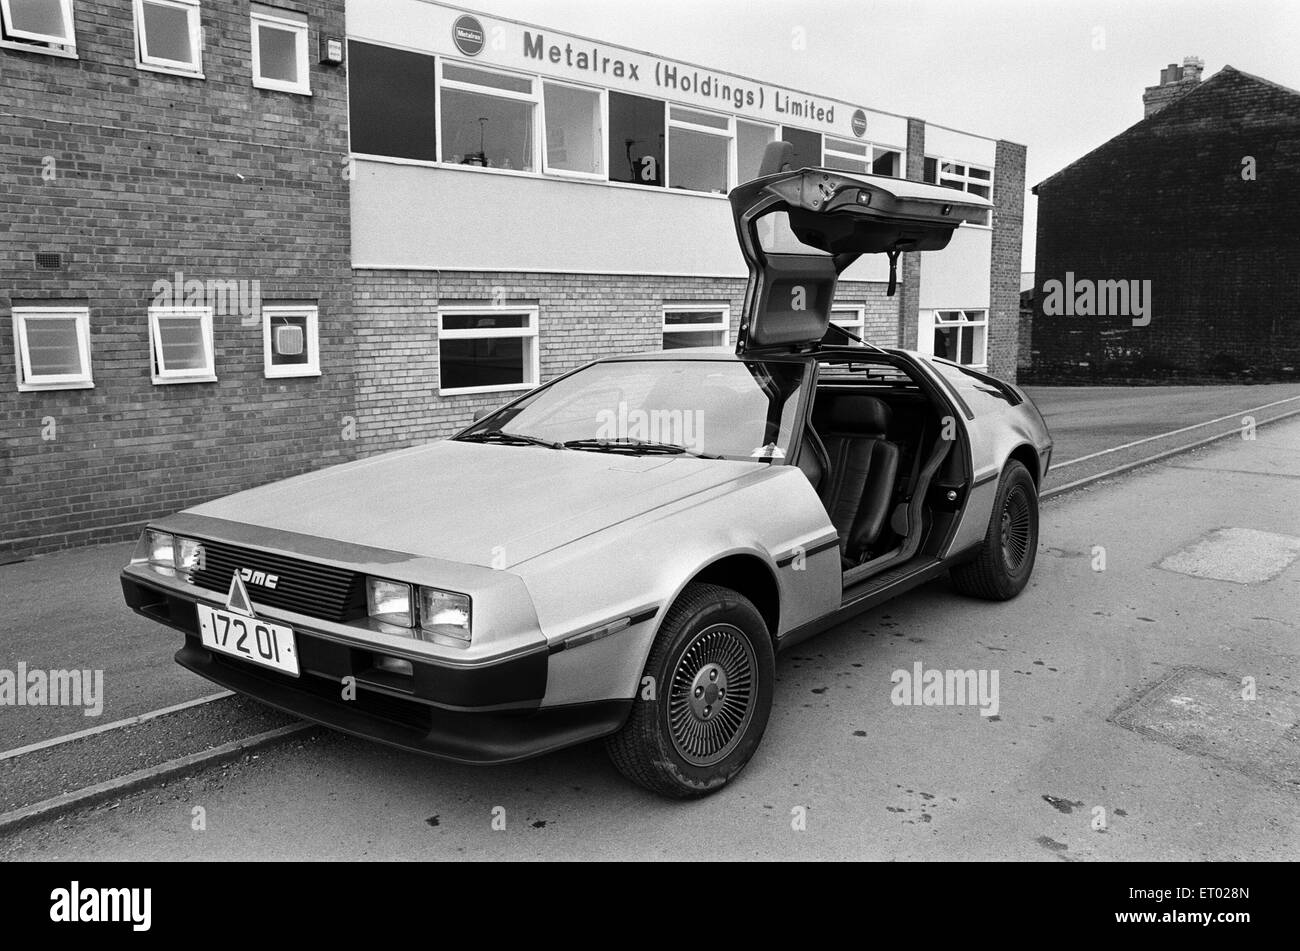 La DeLorean DMC-12 voiture de sport fabriqués par la DeLorean Motor Company. Photographié à la société bureaux d'Metalrax Holdings Limited, Birmingham, le 9 avril 1981. Banque D'Images